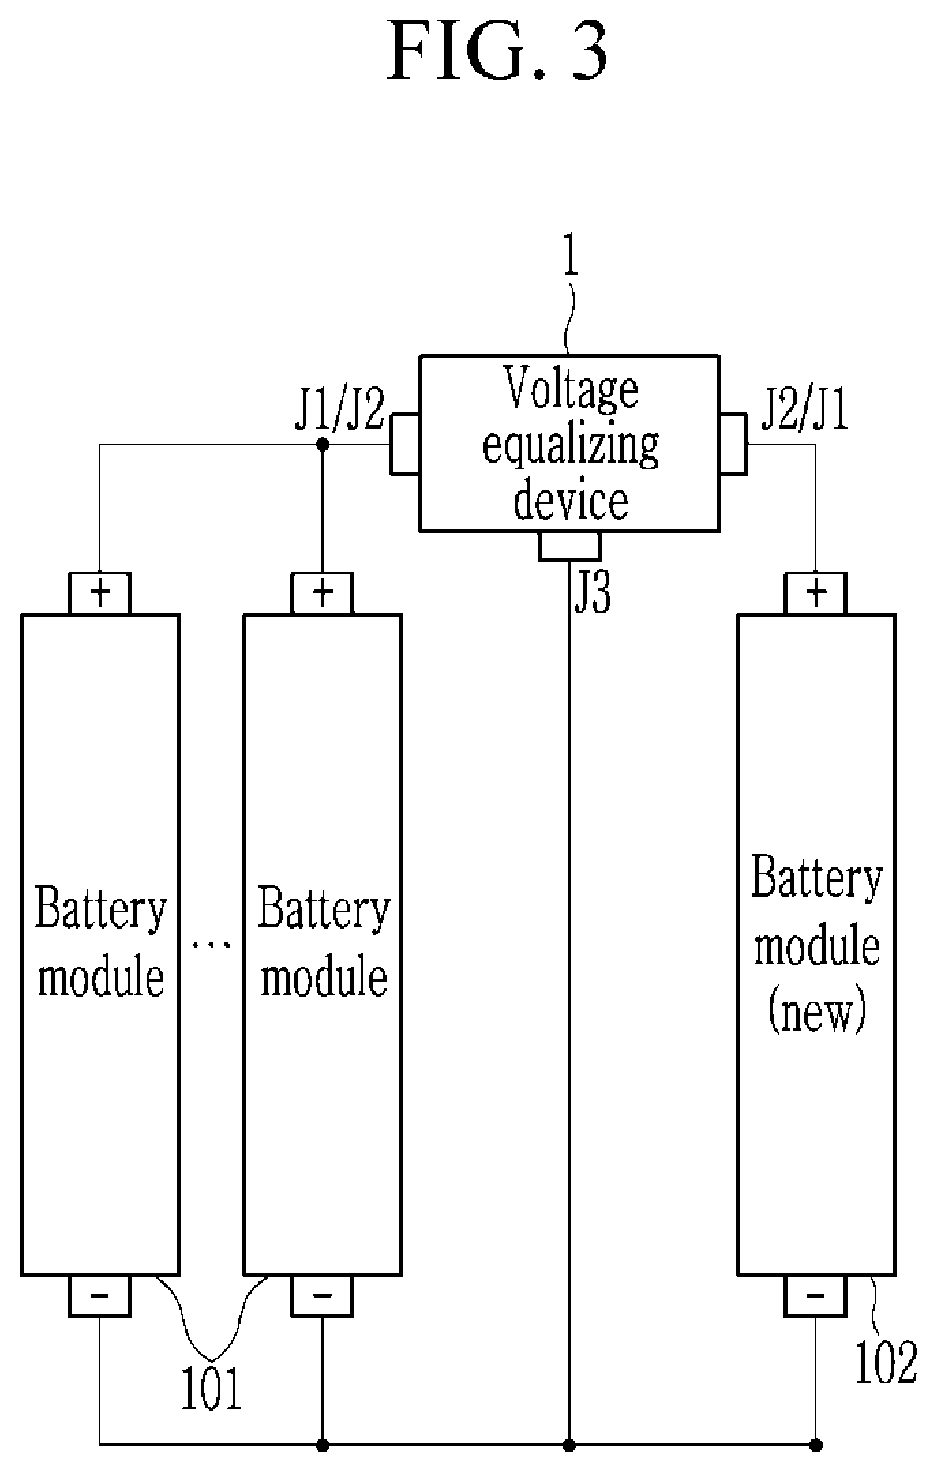 Voltage equalizing device